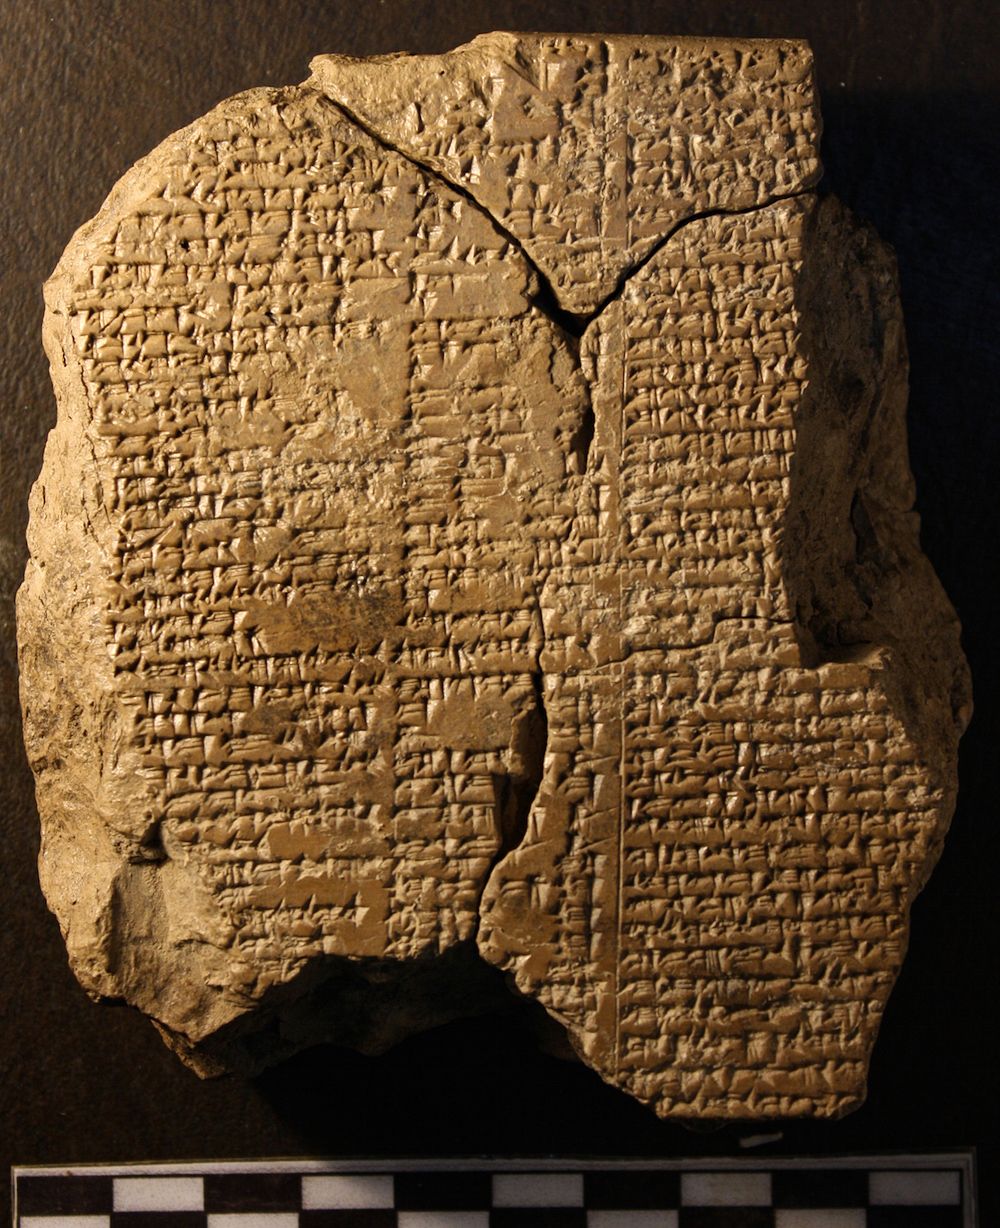 Máy tính bảng chứa một phần của Sử thi Gilgamesh